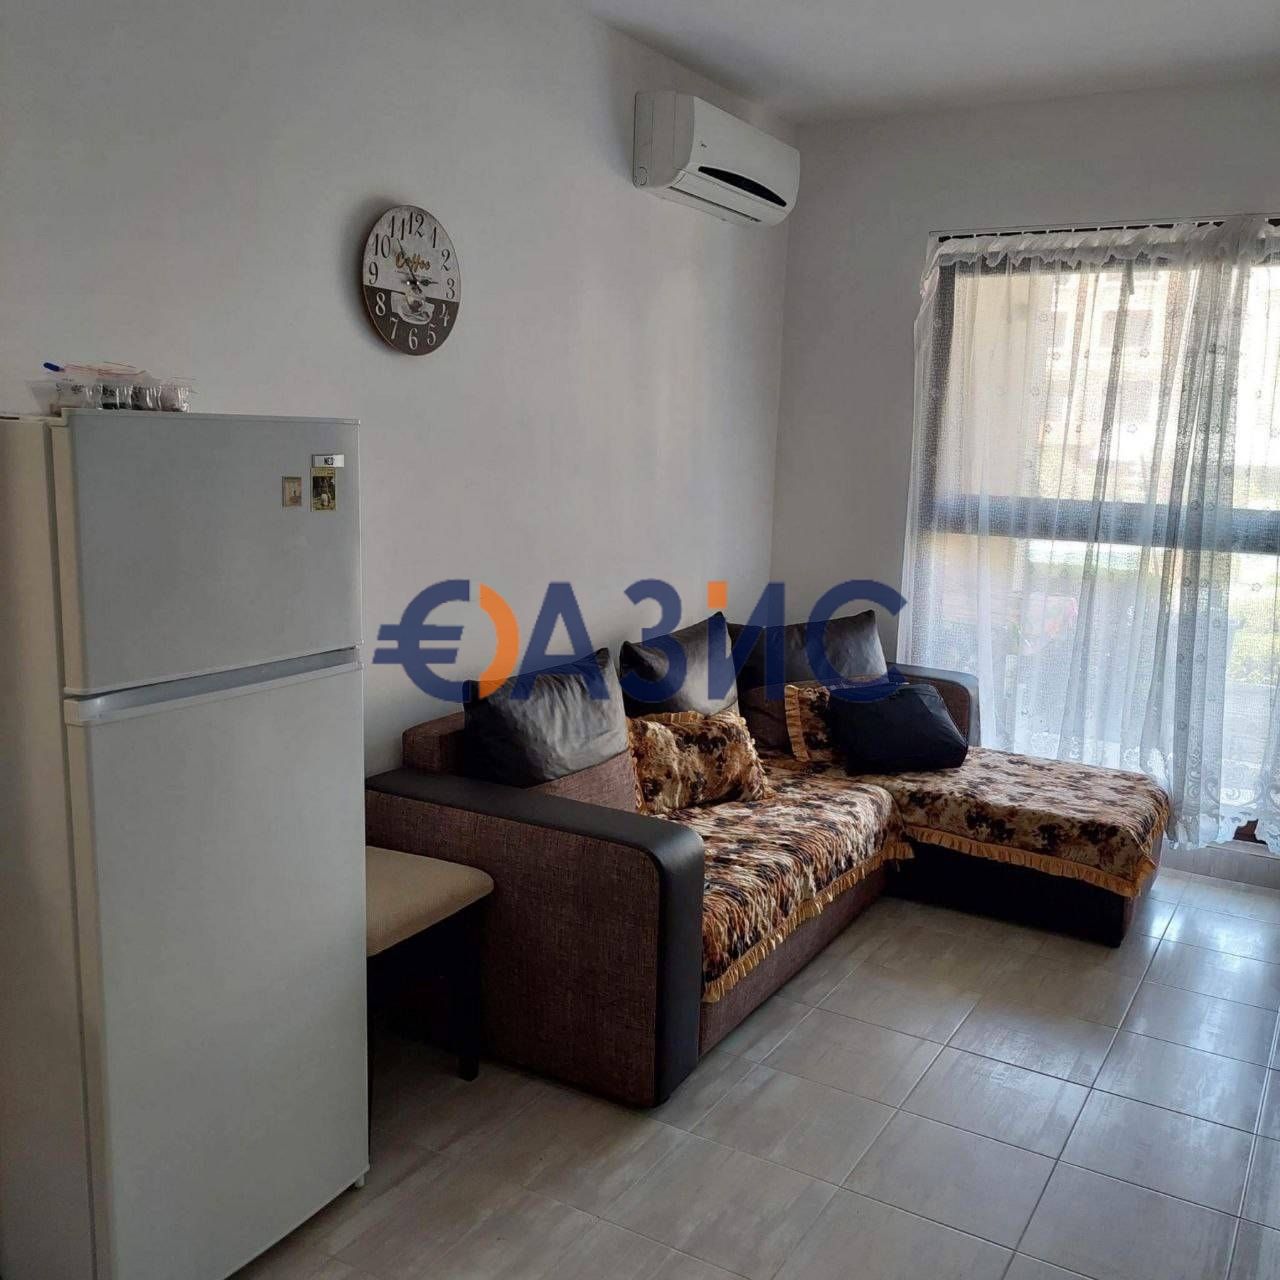 Apartment in Sozopol, Bulgaria, 60 sq.m - picture 1